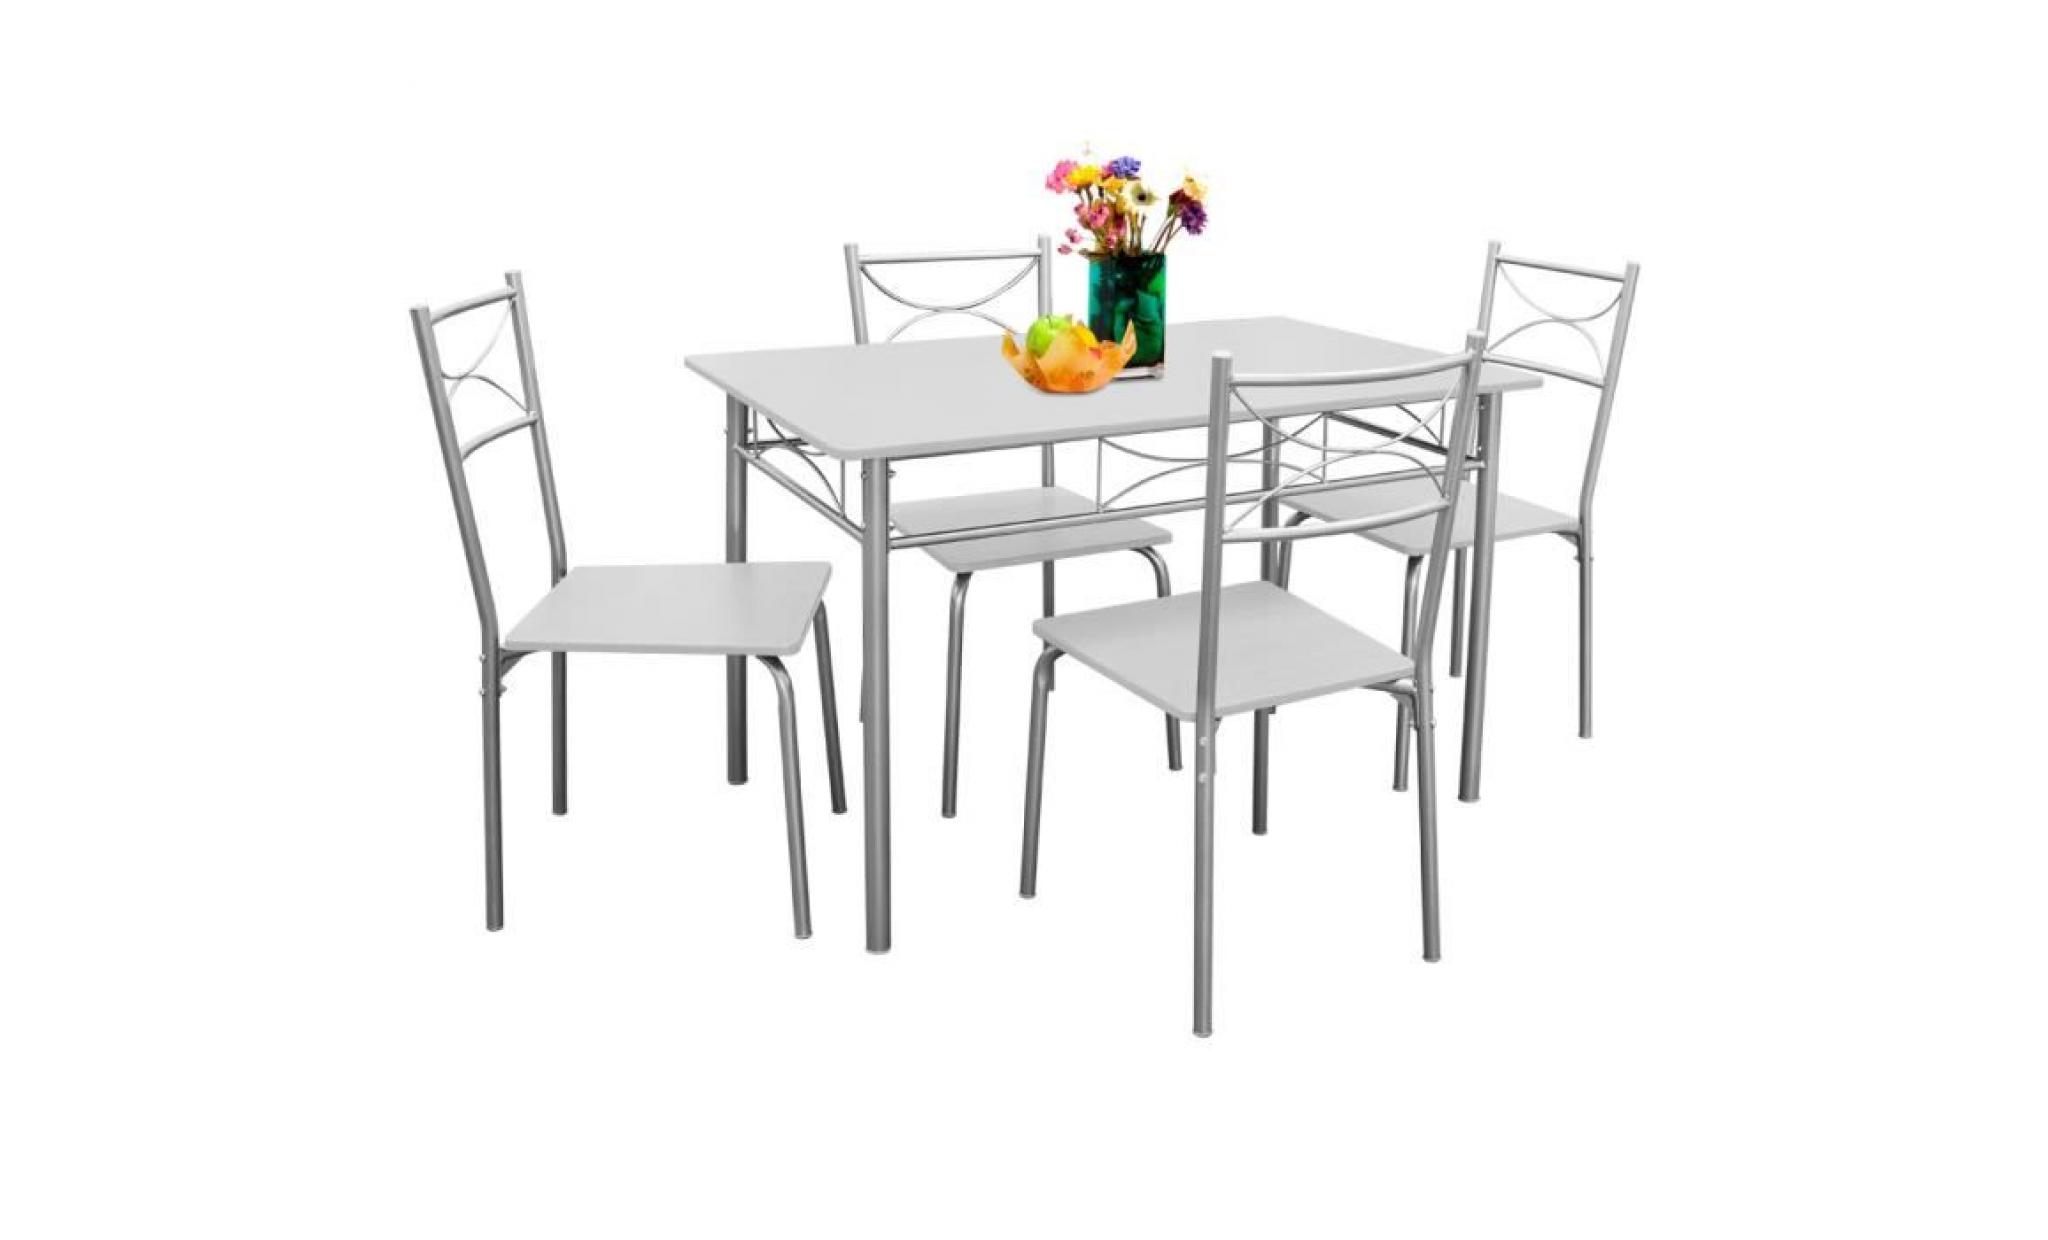 deuba | ensemble paul   salle à manger 5 pièces   1 table et 4 chaises   résistant   couleur blanc écru   cuisine pas cher